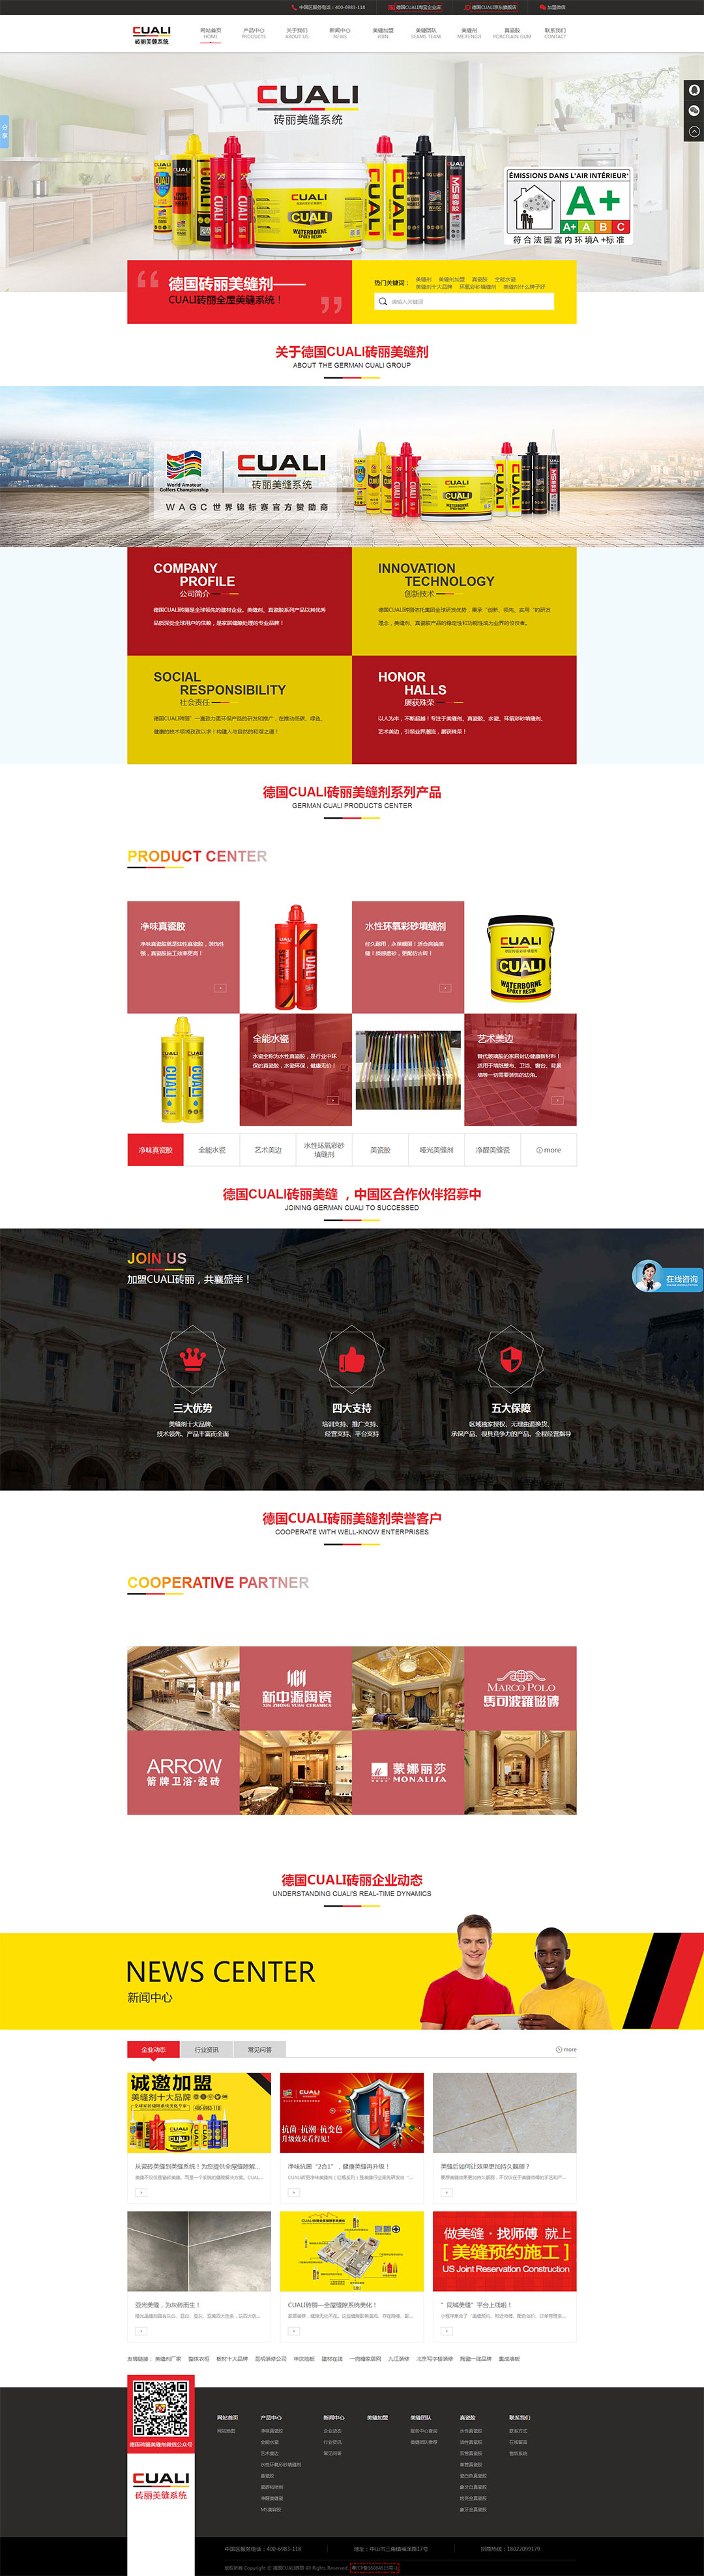 上海网站设计公司-润壤网络终于完成了对德国CUALI砖丽集团网站设计开发制作